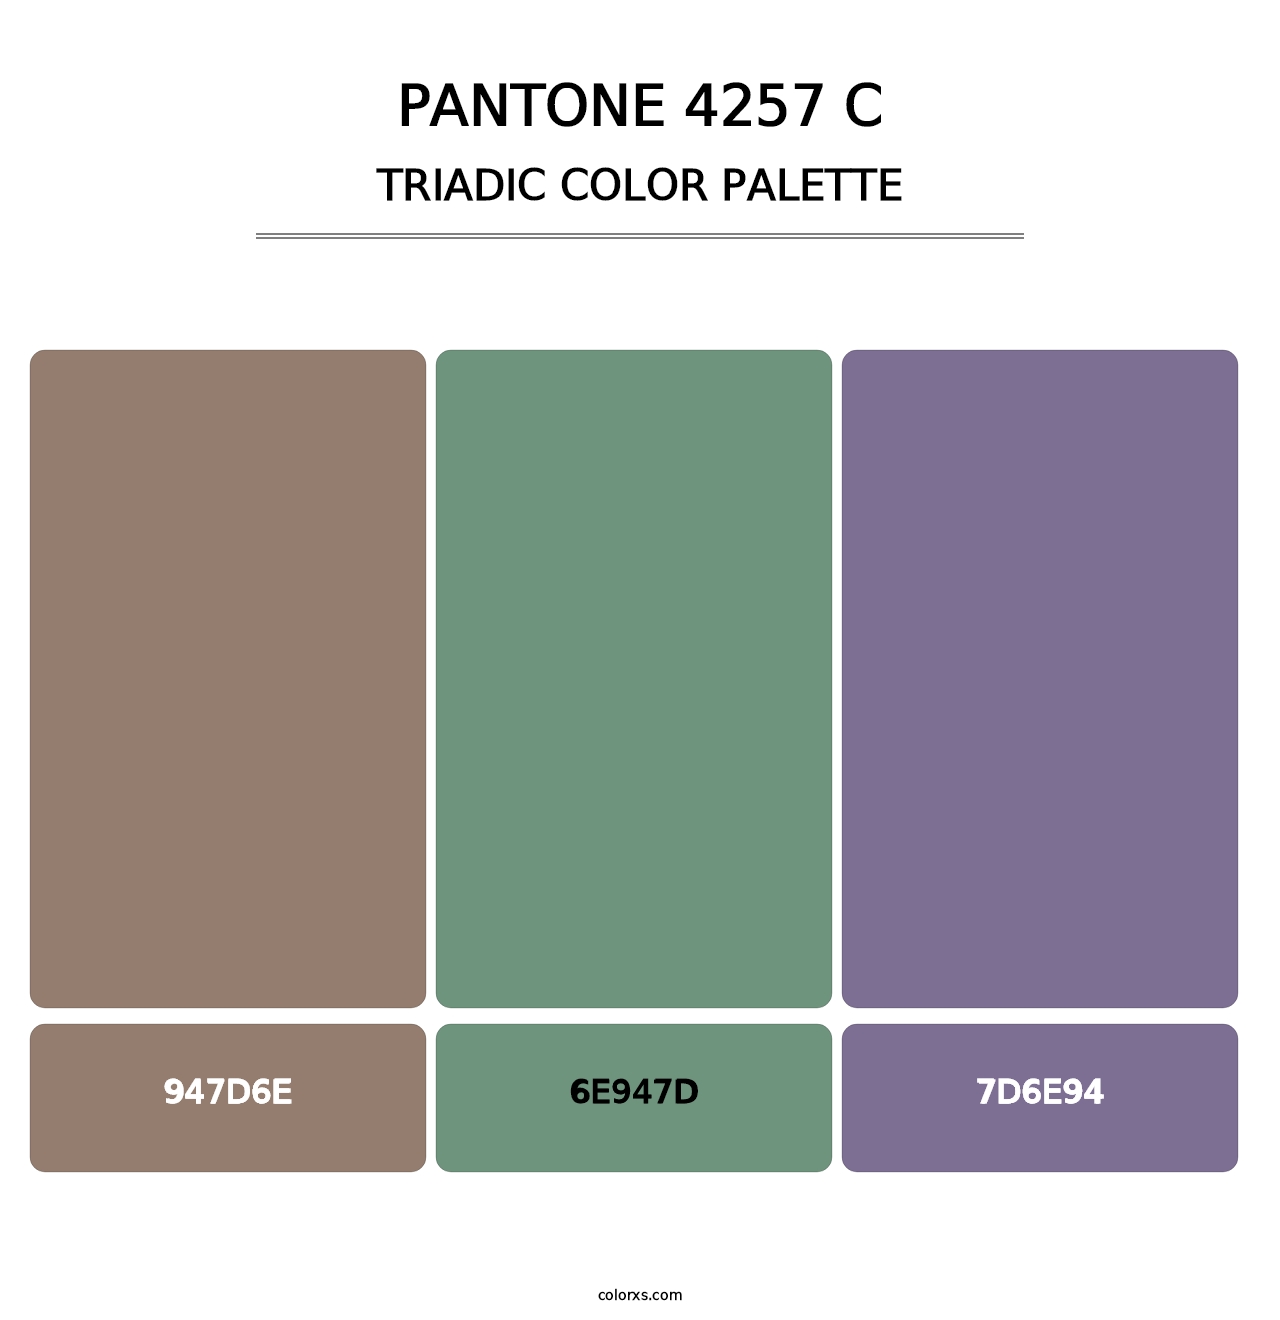 PANTONE 4257 C - Triadic Color Palette